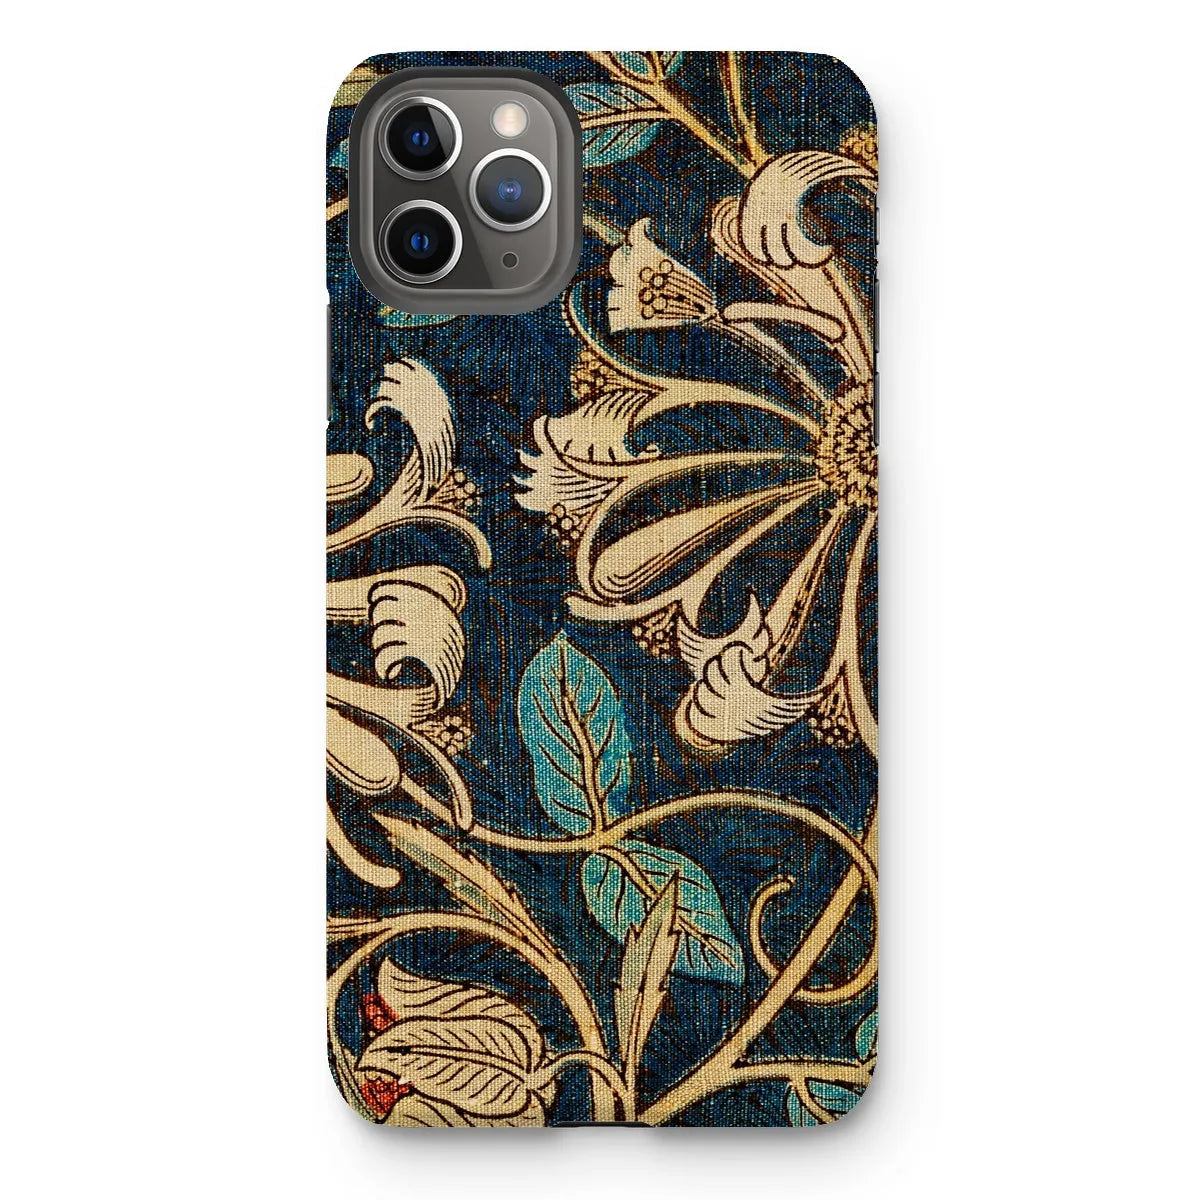 Honeysuckle 3 - Floral Aesthetic Phone Case - William Morris - Iphone 11 Pro Max / Matte - Mobile Phone Cases